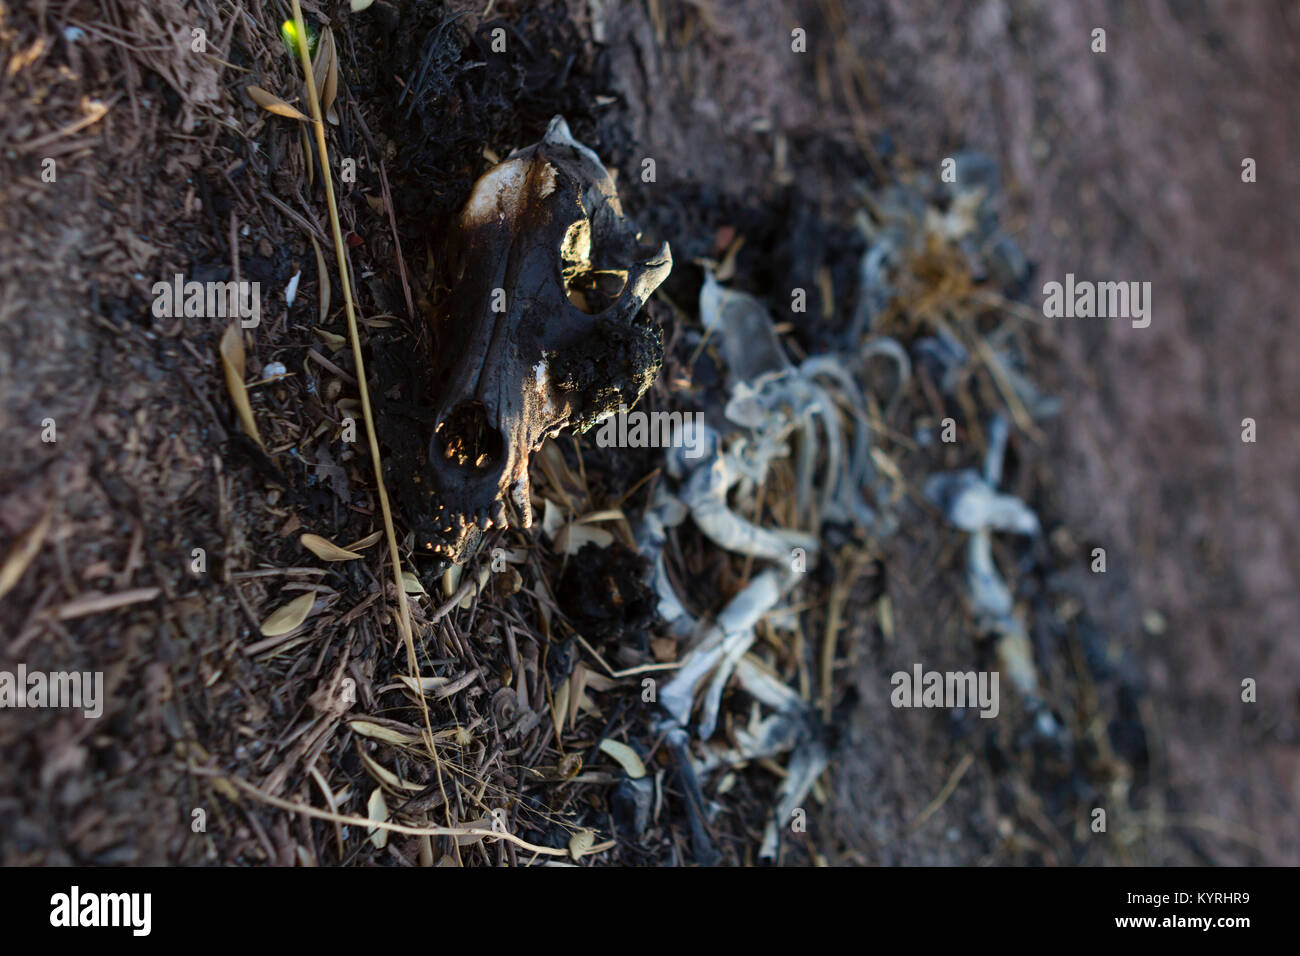 Lo scheletro di animale in luce naturale, grim, deprimente, potente immagine degli effetti del cambiamento climatico e del danno ambientale. Foto Stock